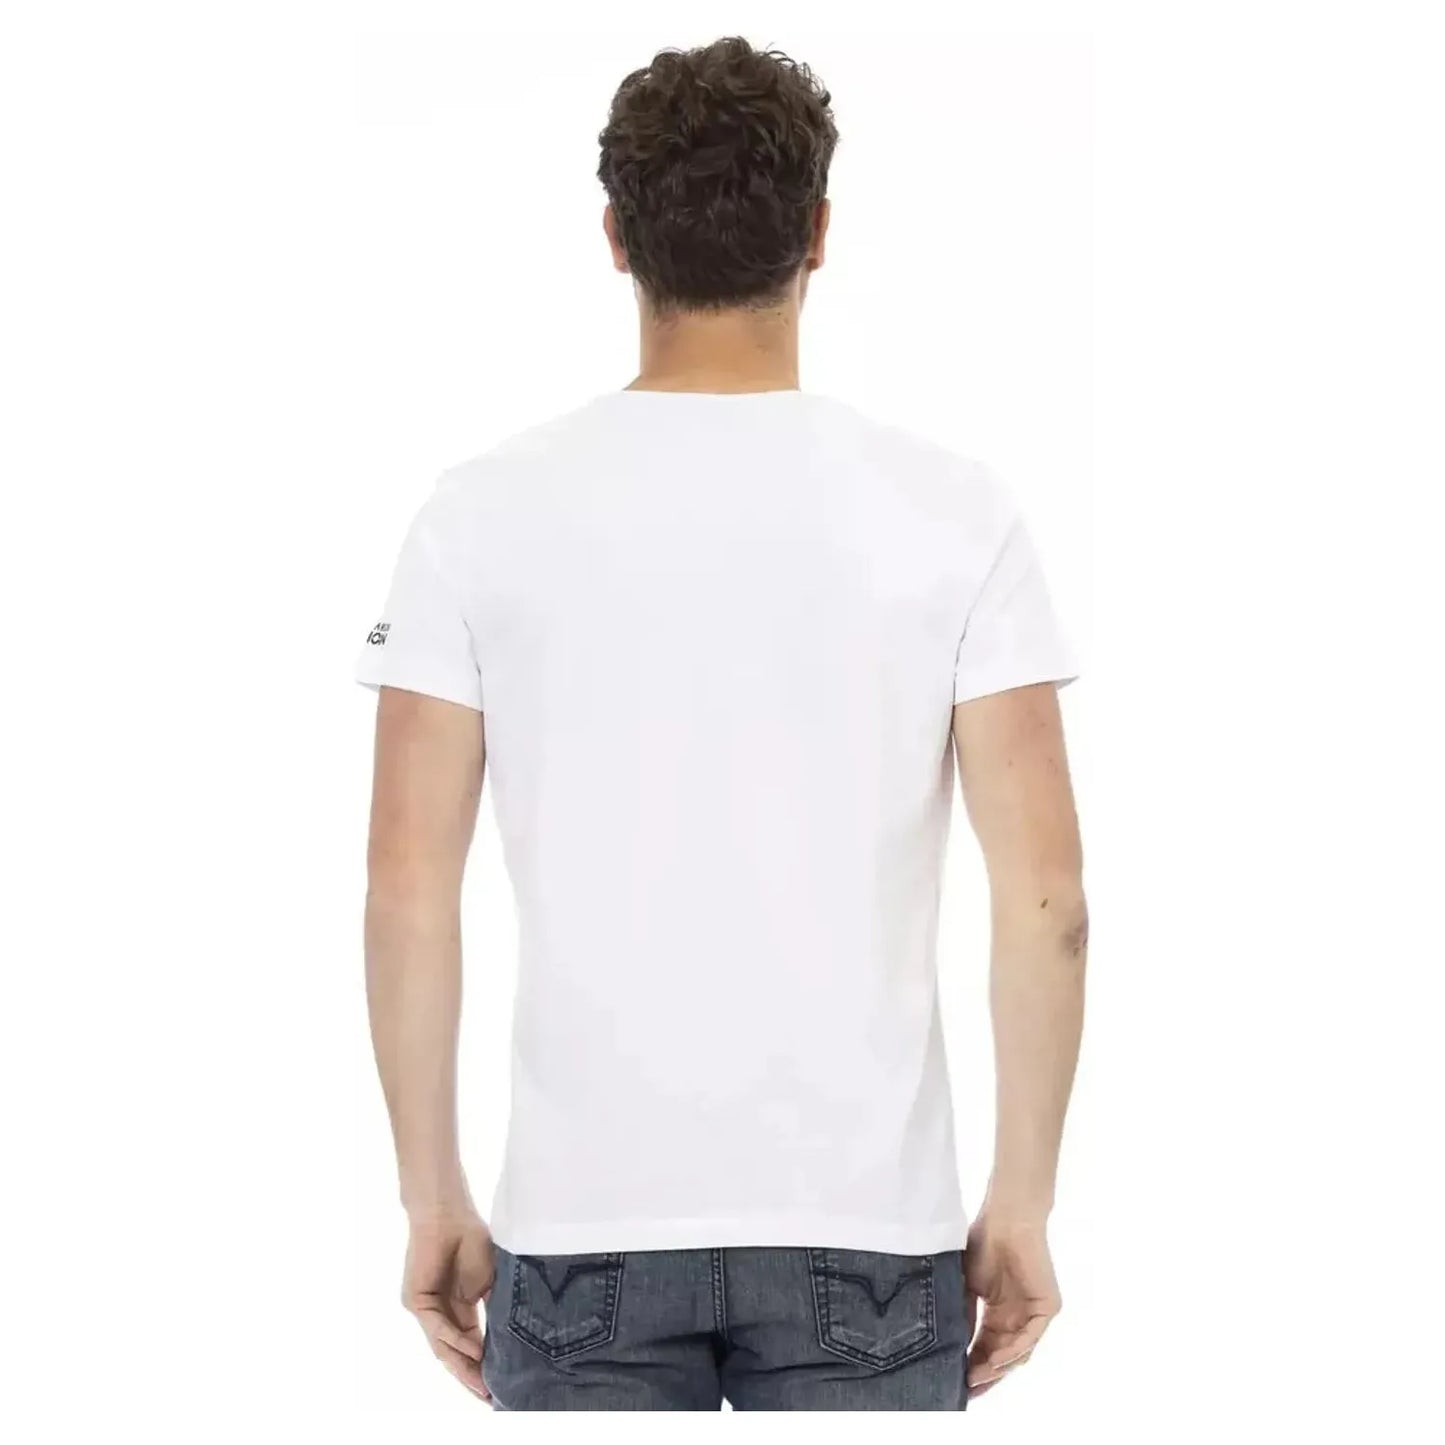 Trussardi Action Elegant White Short Sleeve Tee for Men white-cotton-t-shirt-92